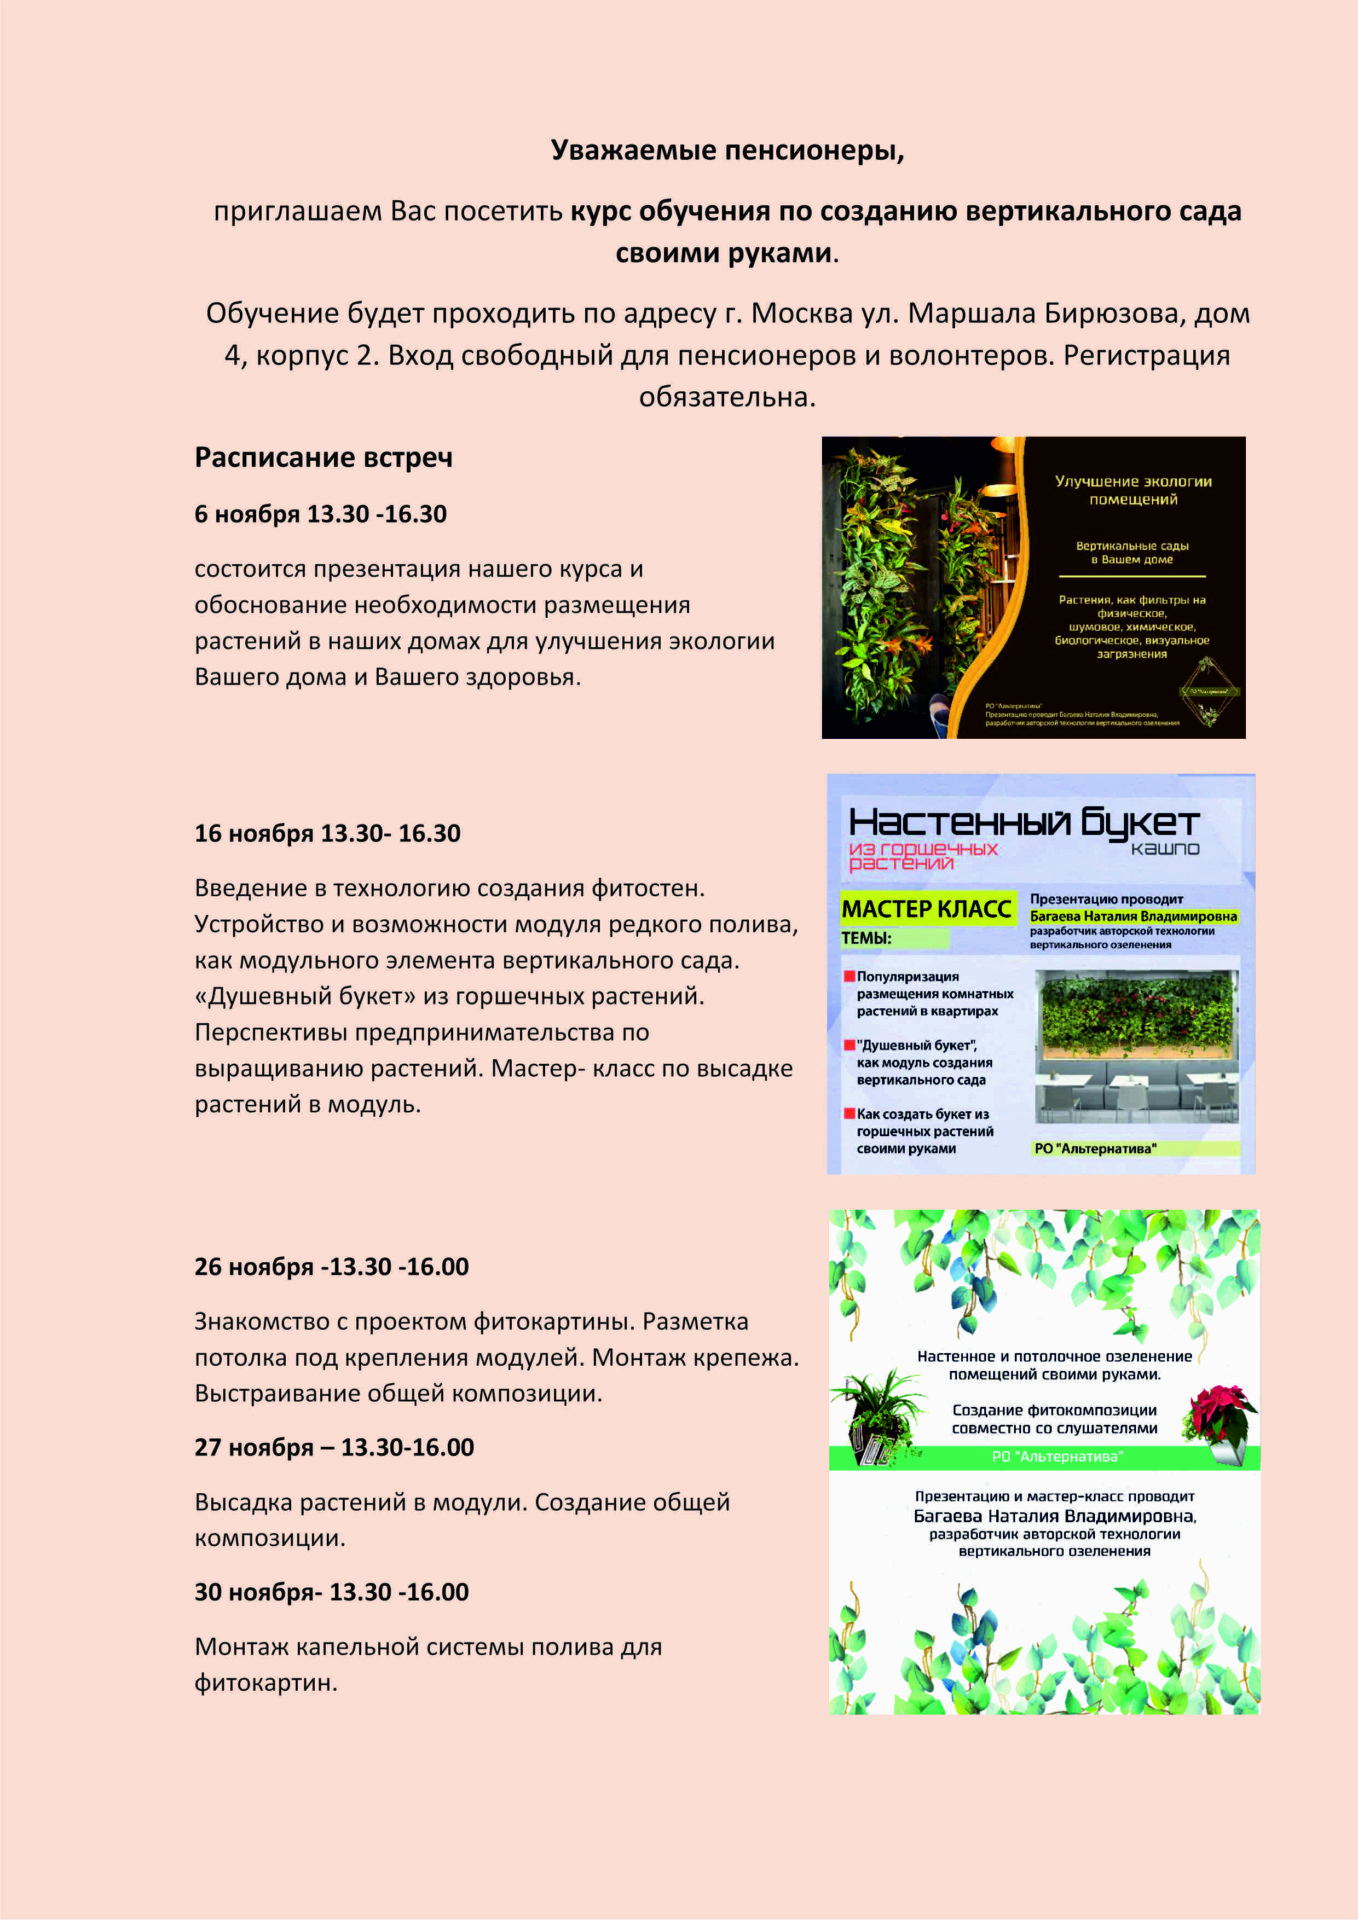 Расписание встреч в ЦСО Щукино по знакомству с технологией создания вертикальных садов